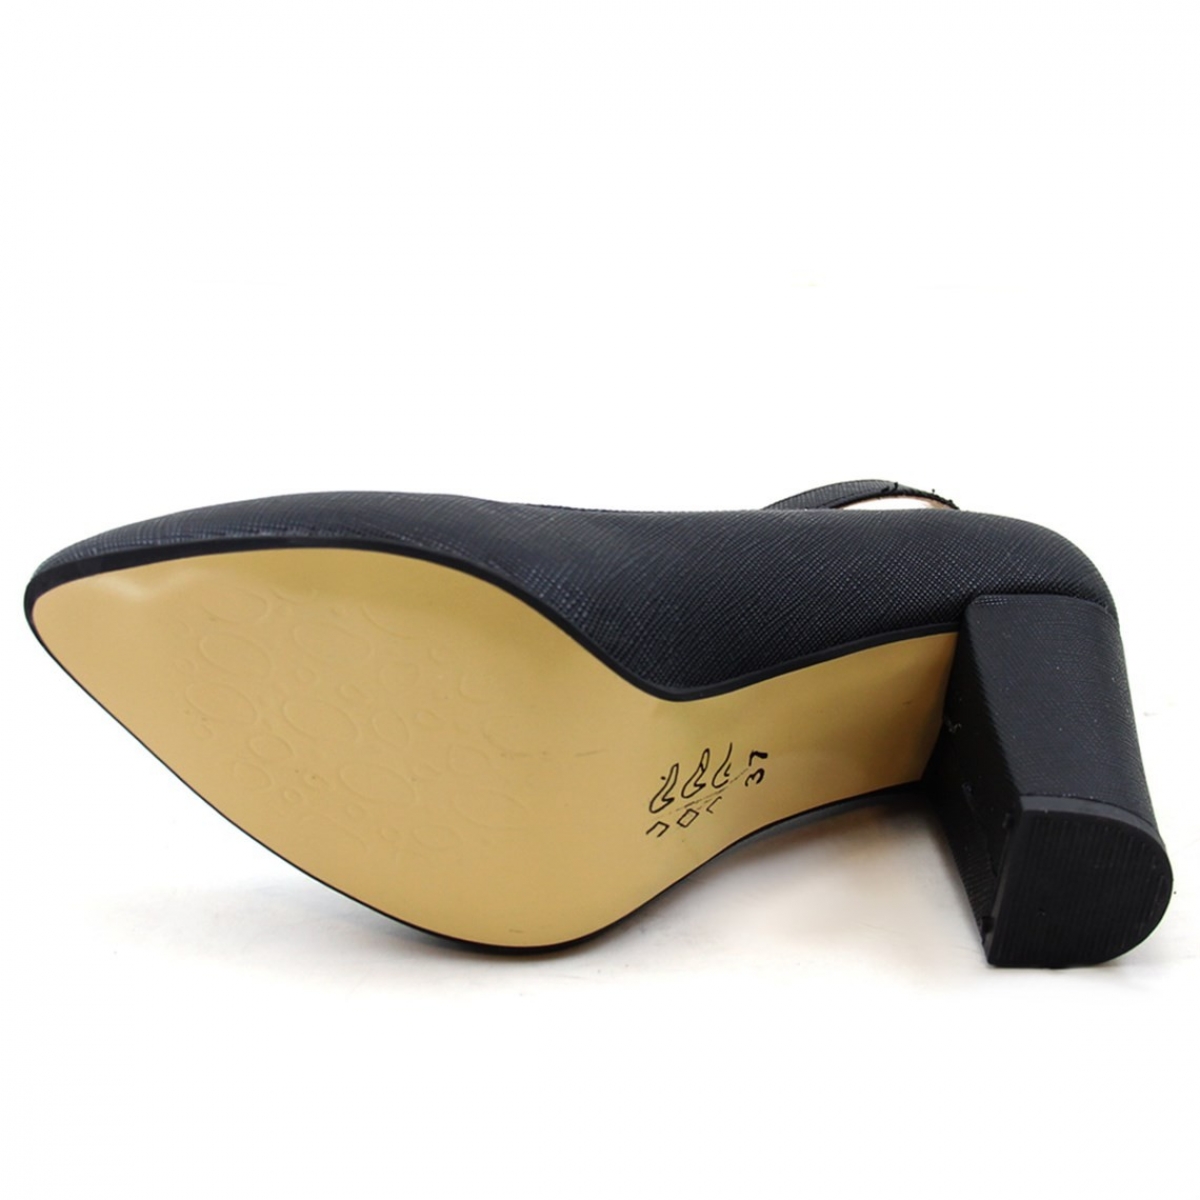 Flo Günlük Topuklu Siyah-Baskılı Kadın Ayakkabı N-2601. 4